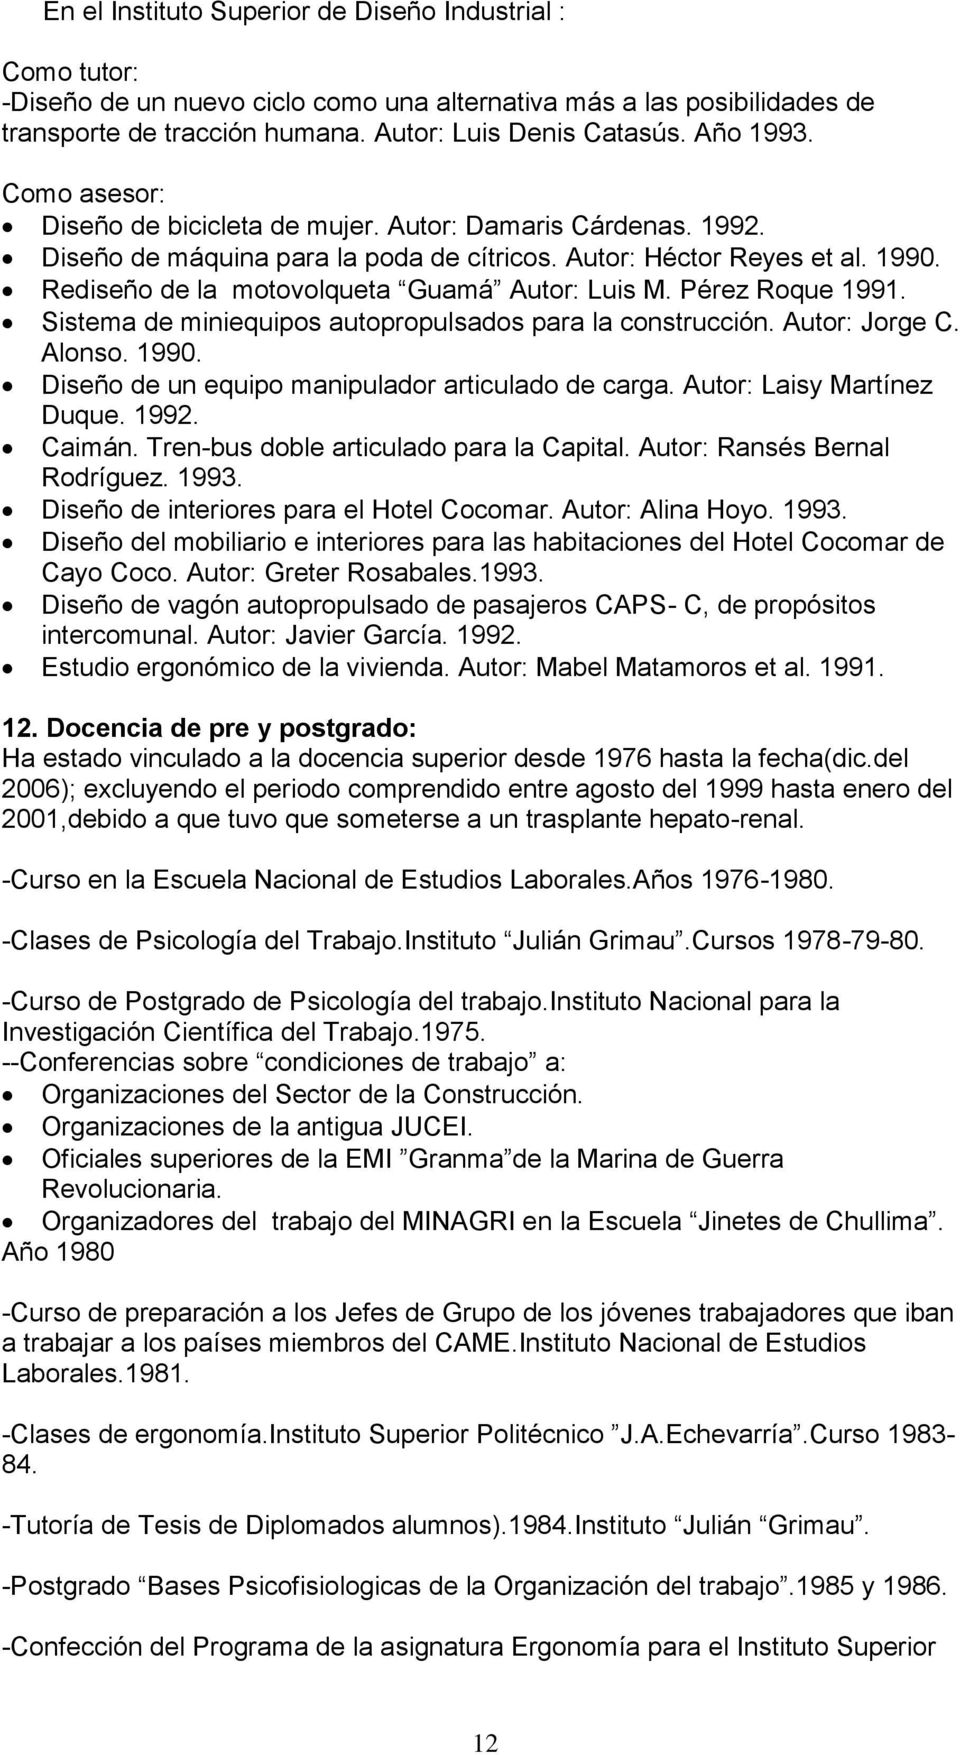 Rediseño de la motovolqueta Guamá Autor: Luis M. Pérez Roque 1991. Sistema de miniequipos autopropulsados para la construcción. Autor: Jorge C. Alonso. 1990.